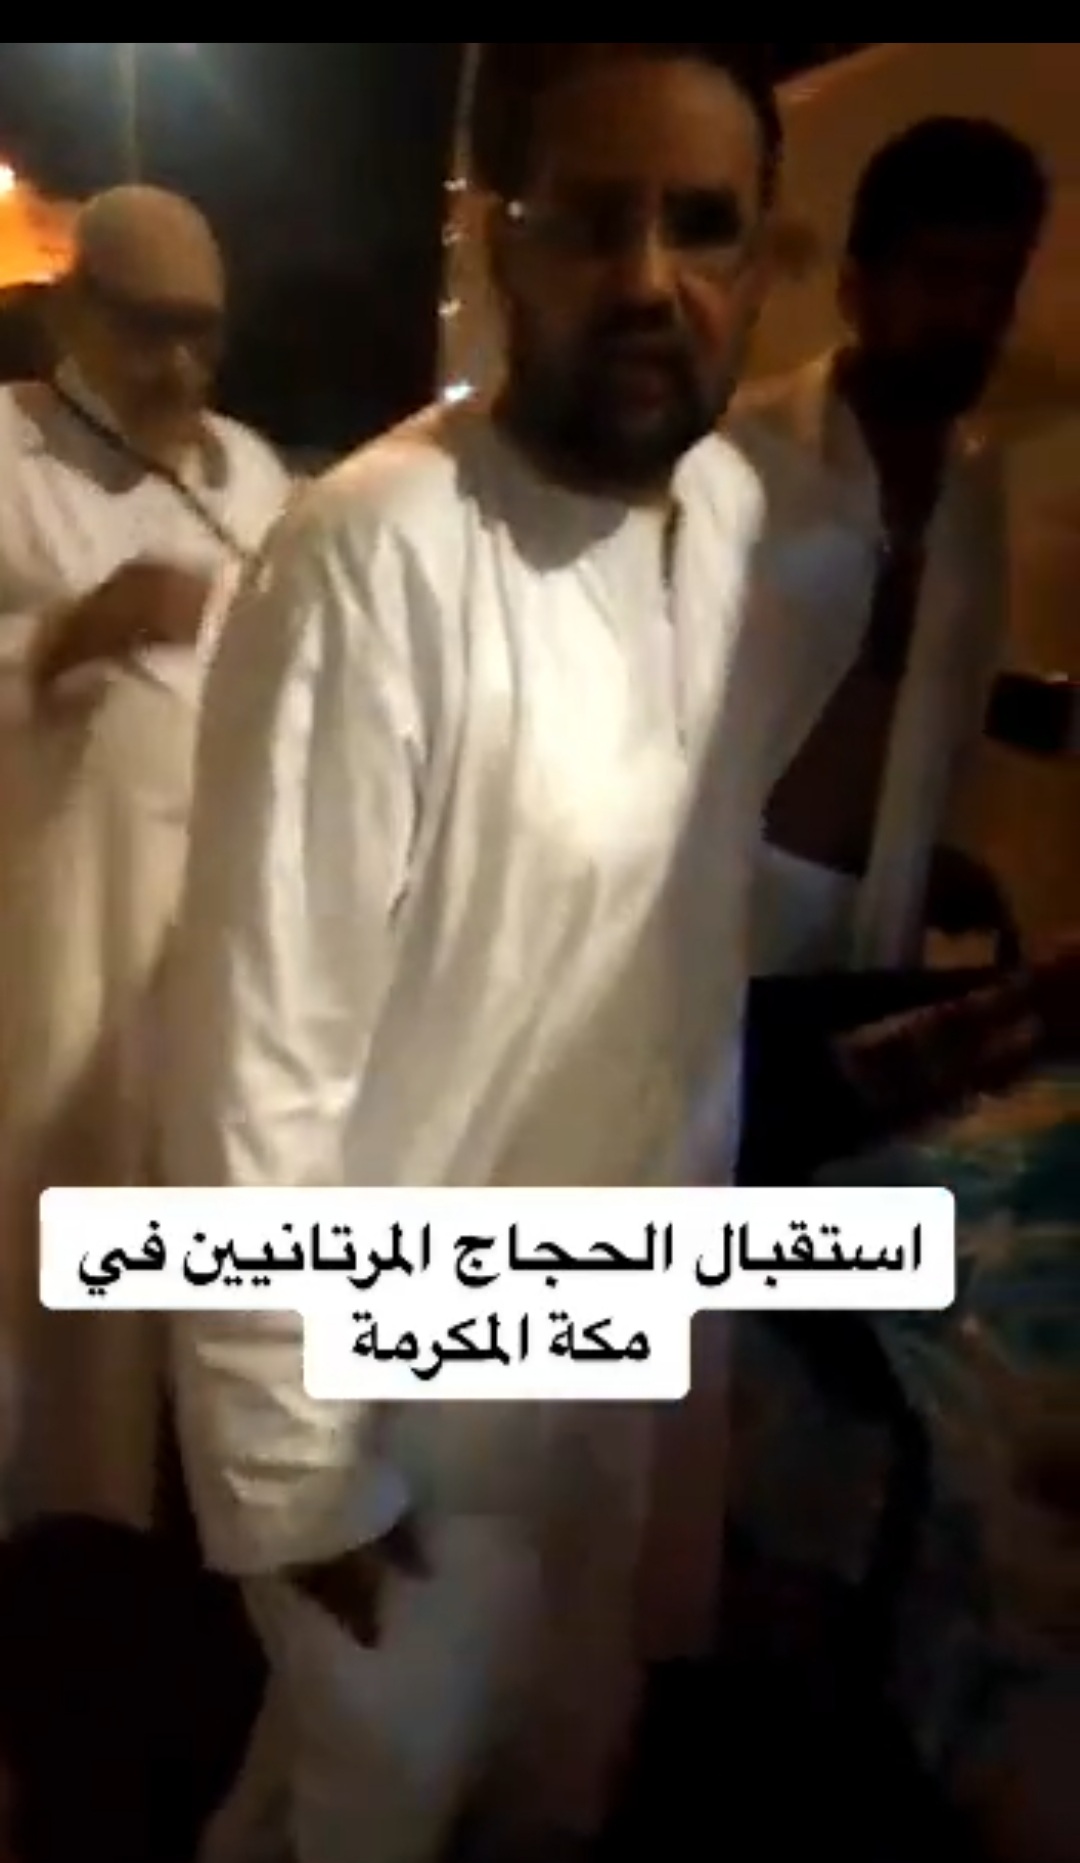 النائب ابو عبدالرحمن وهو يستقبلهم عند مدخل الفندق